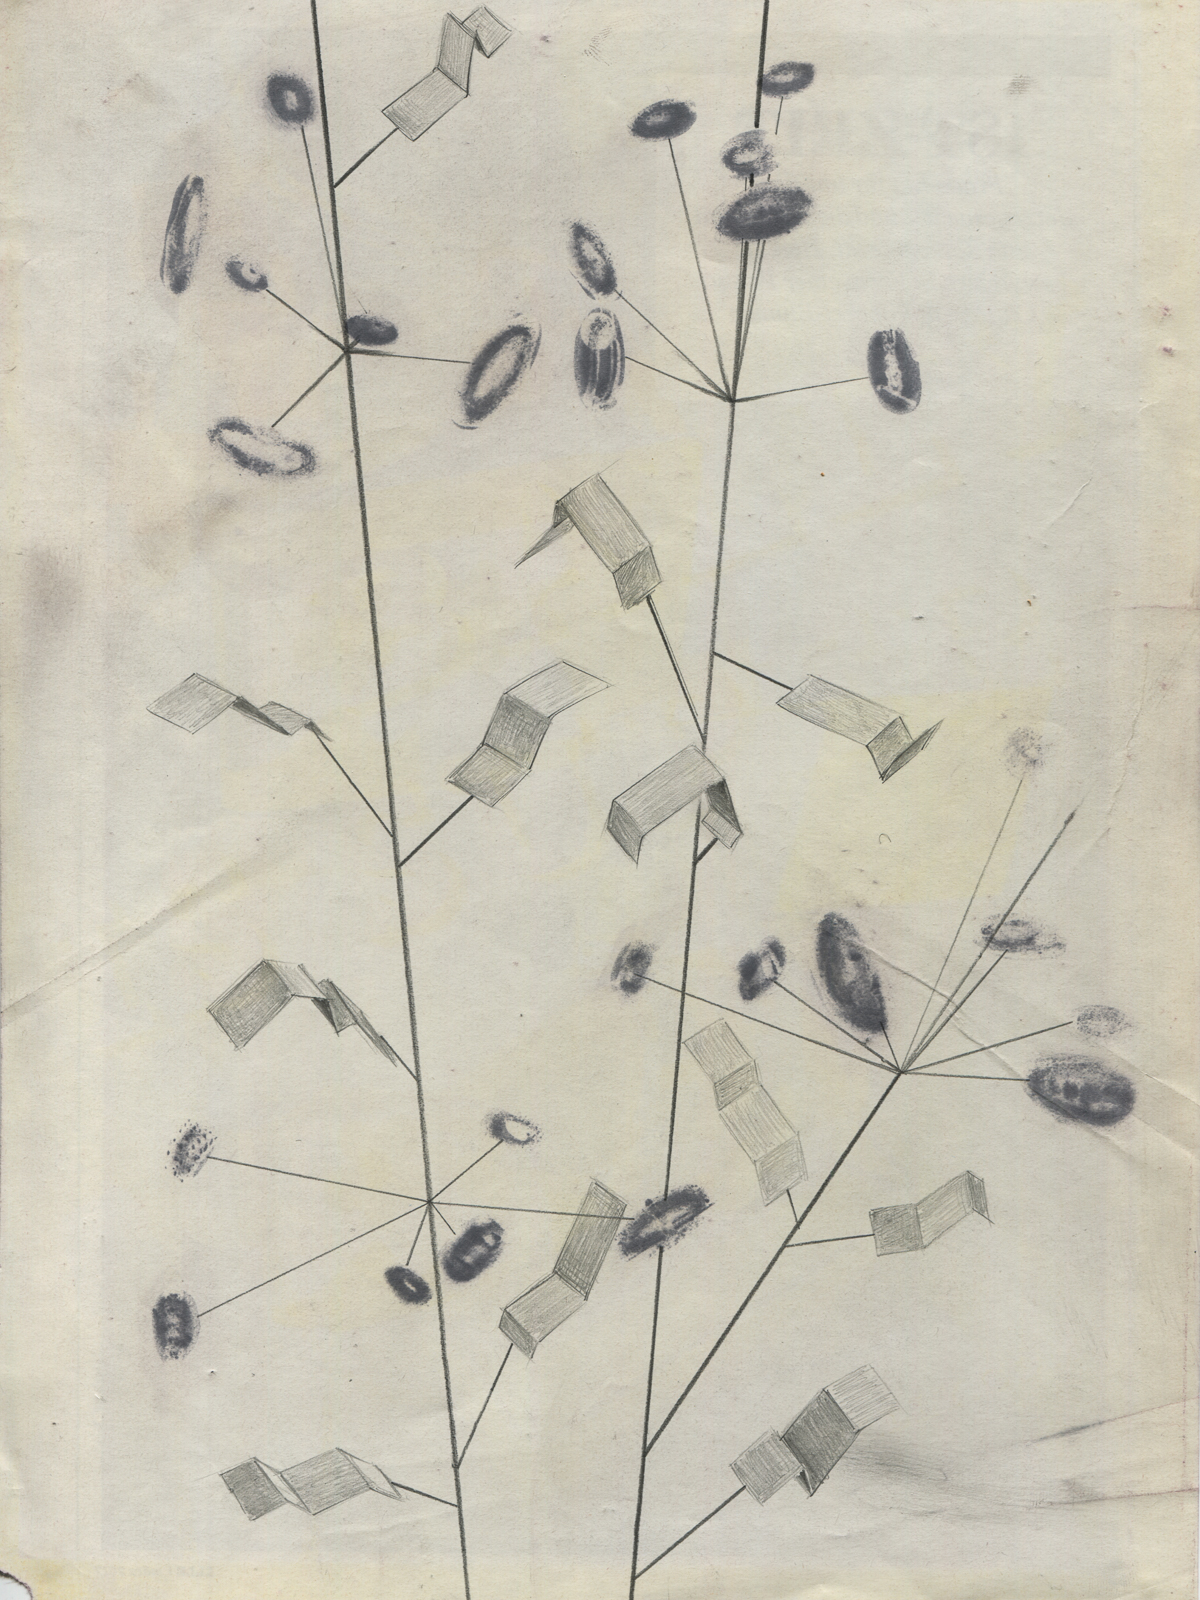 Taxonomy #02, 2017, 19.7 x 27.4 cm, lavenderoil on magazine page, pencil, feltpen